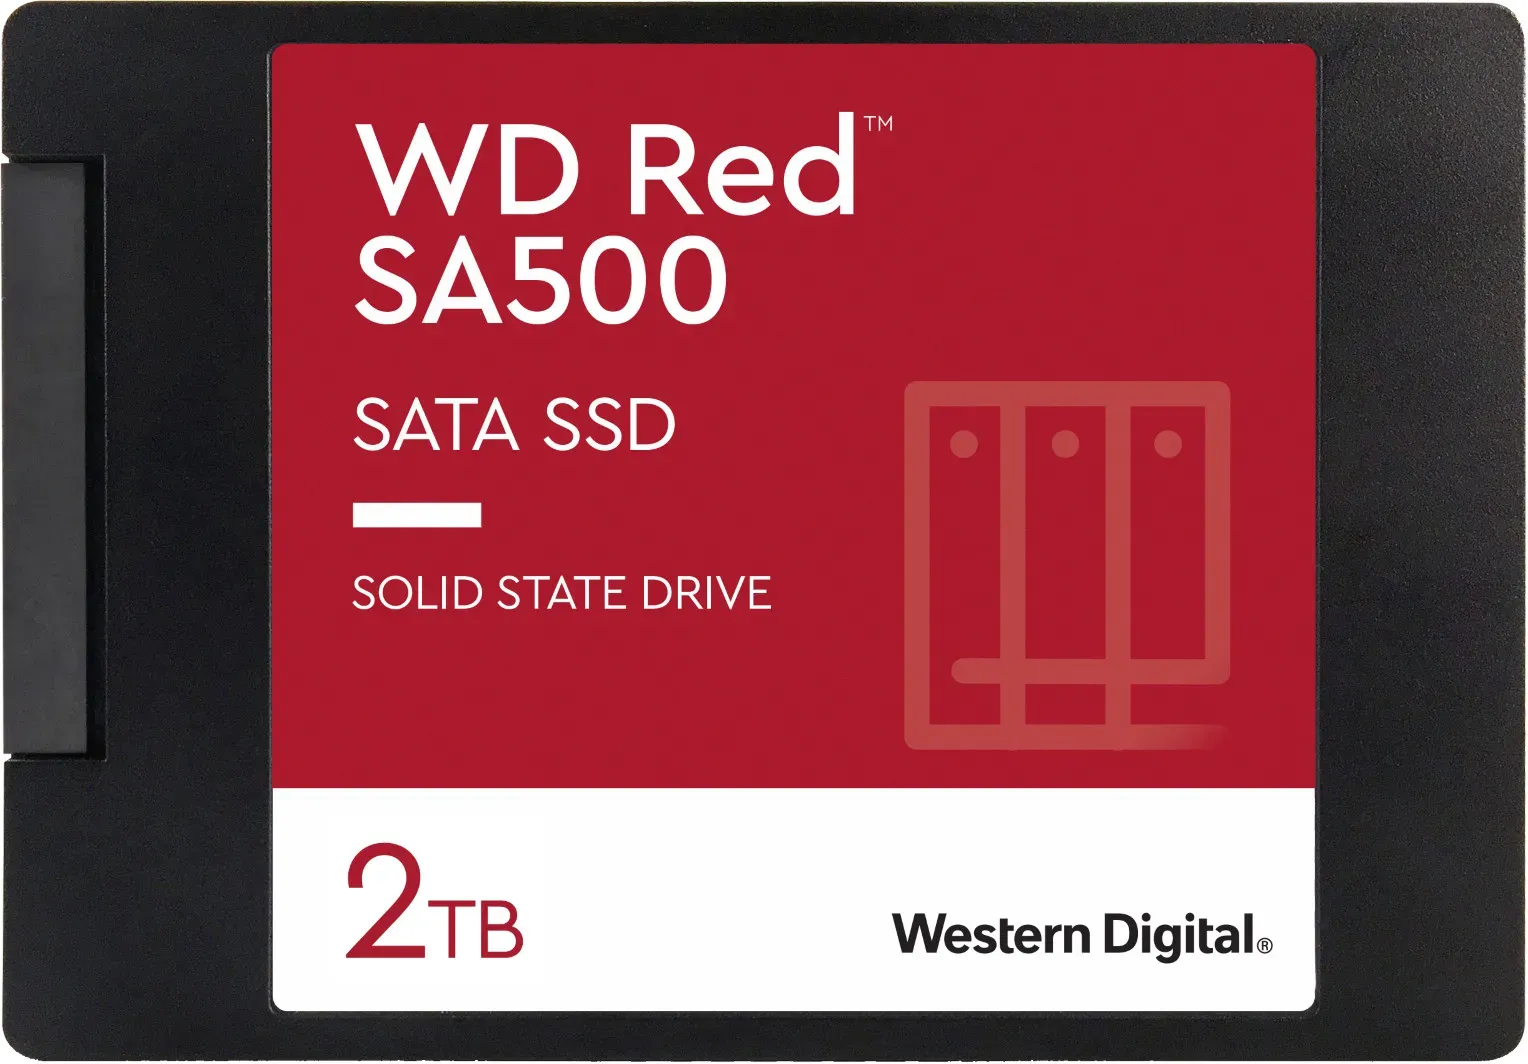 WD RED SA500 SATA SSD 2TB